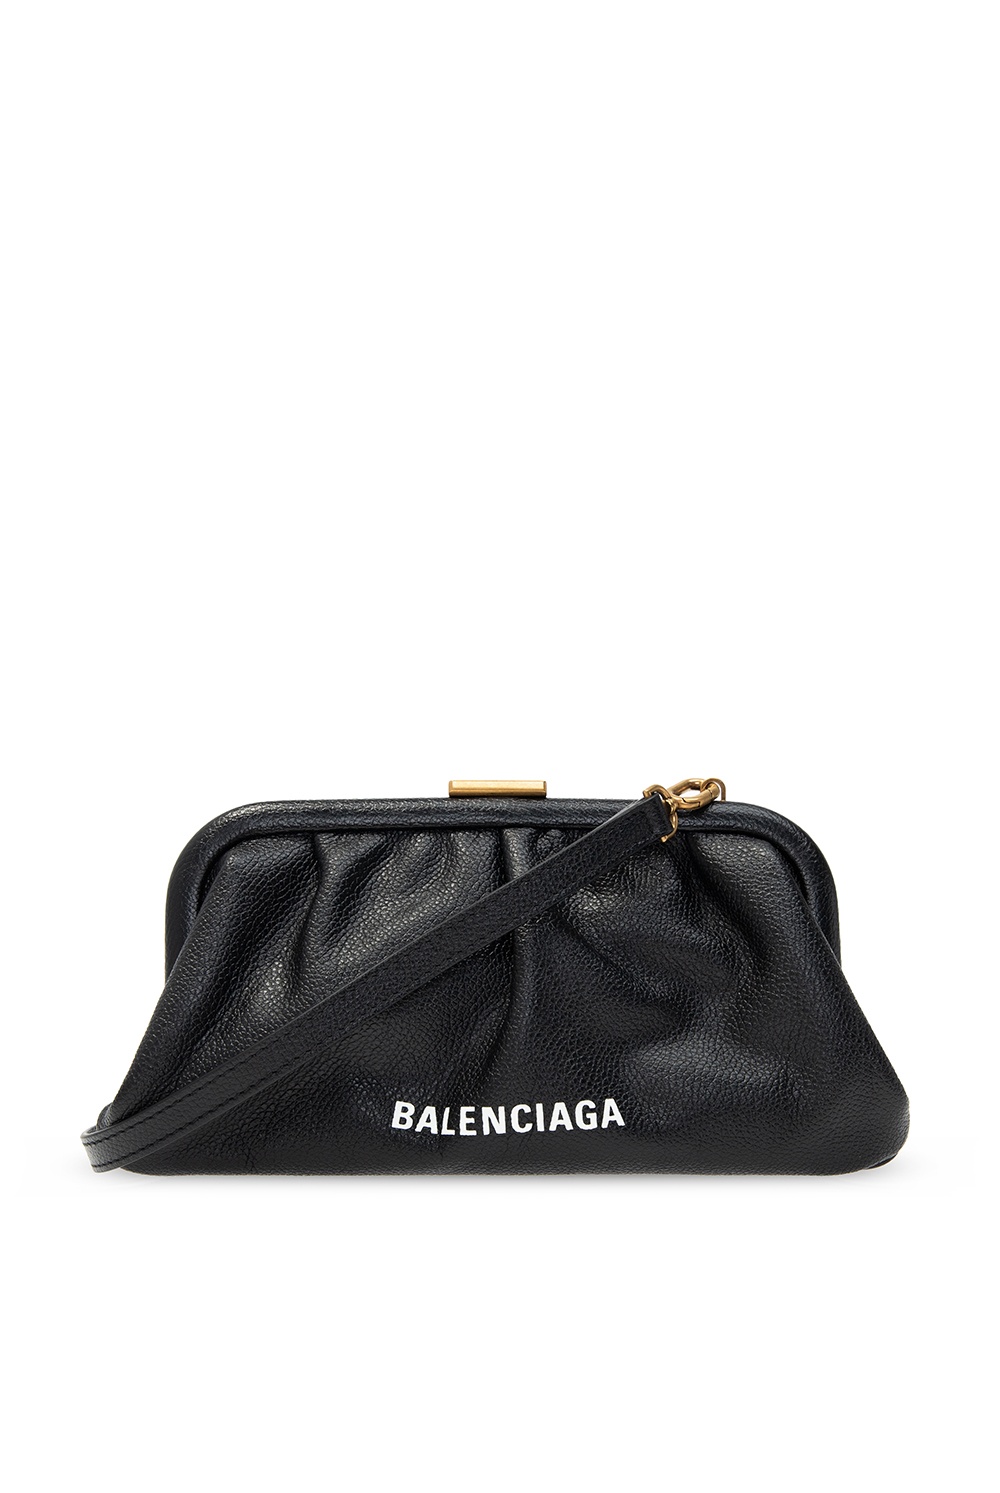 BALENCIAGA Cloud bag in grained leather  Black  Balenciaga clutch 618899  1IZOM online on GIGLIOCOM